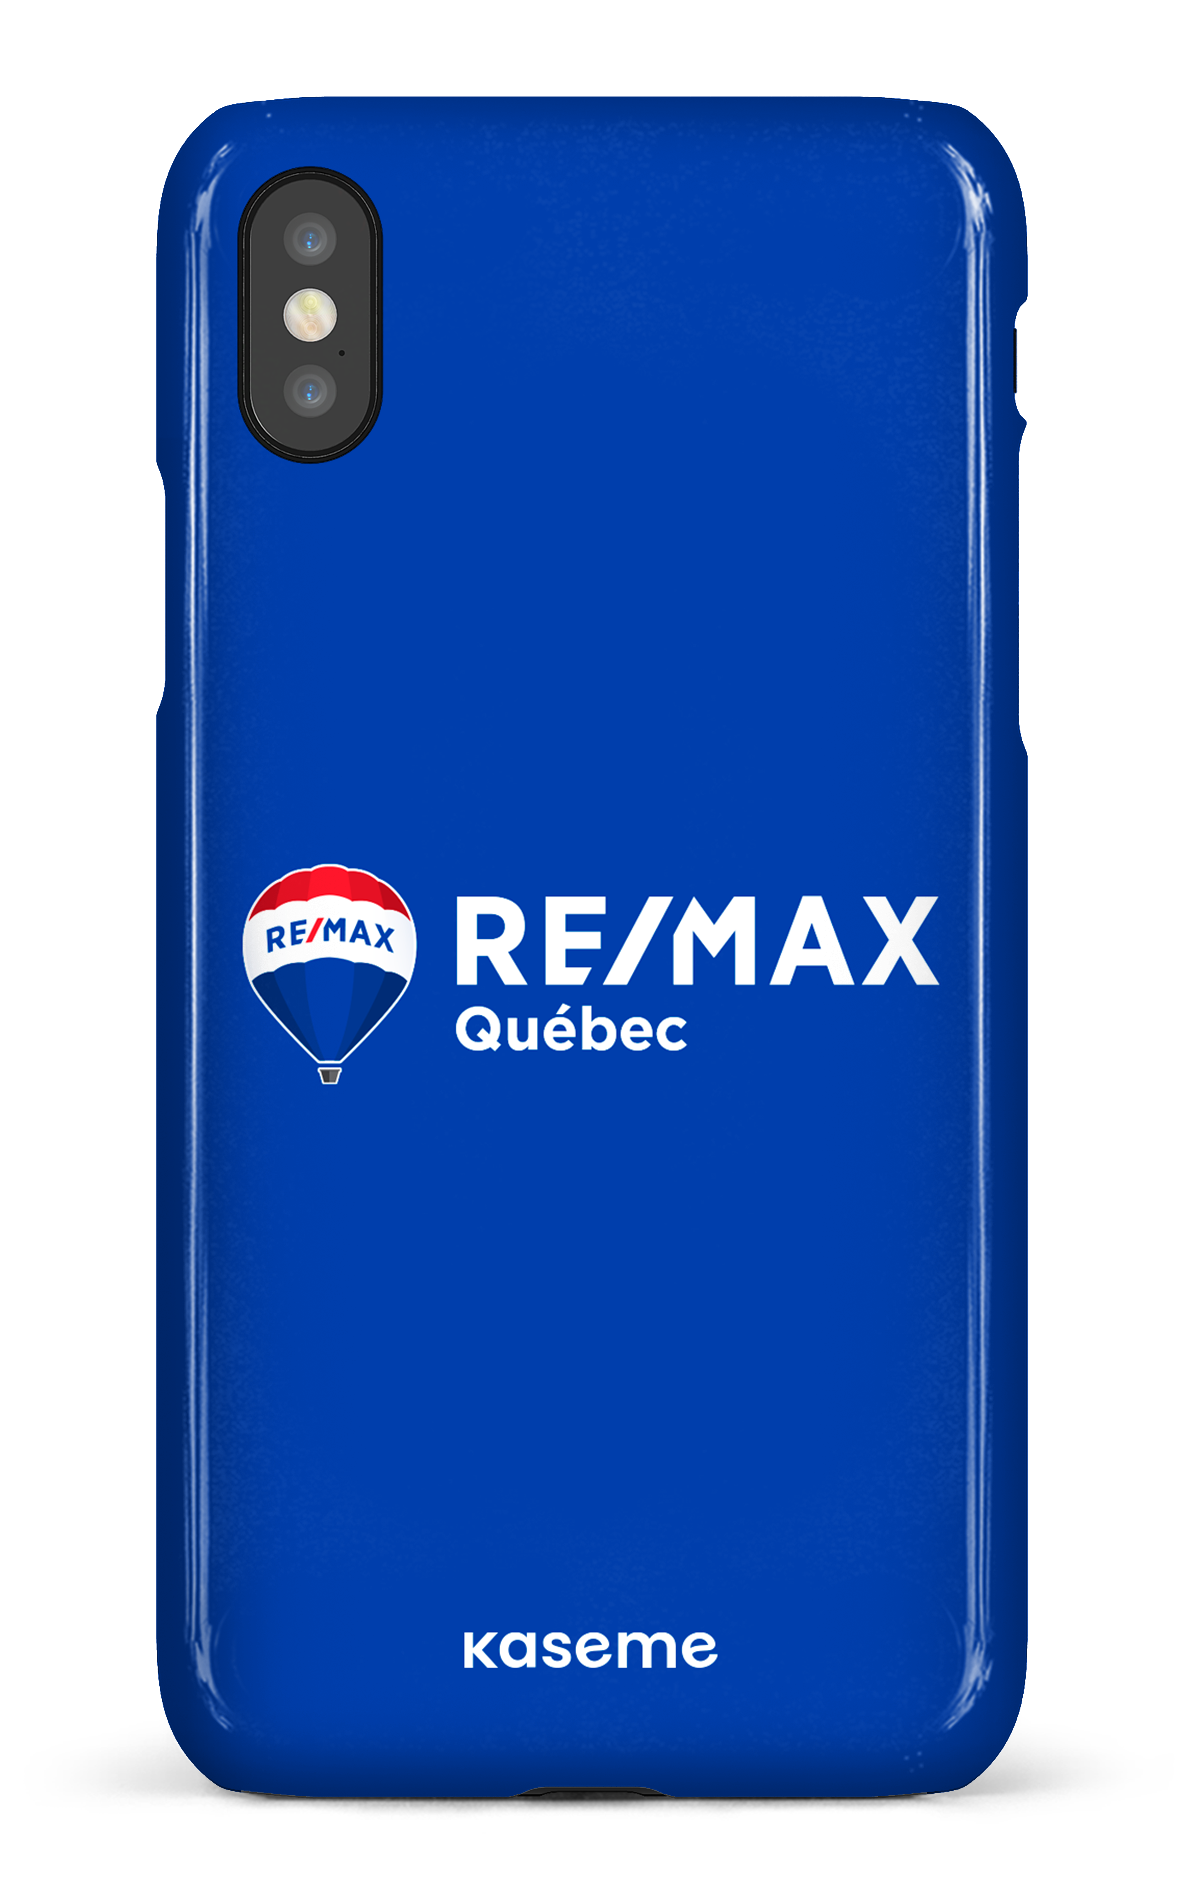 Remax Québec Bleu - iPhone X/Xs